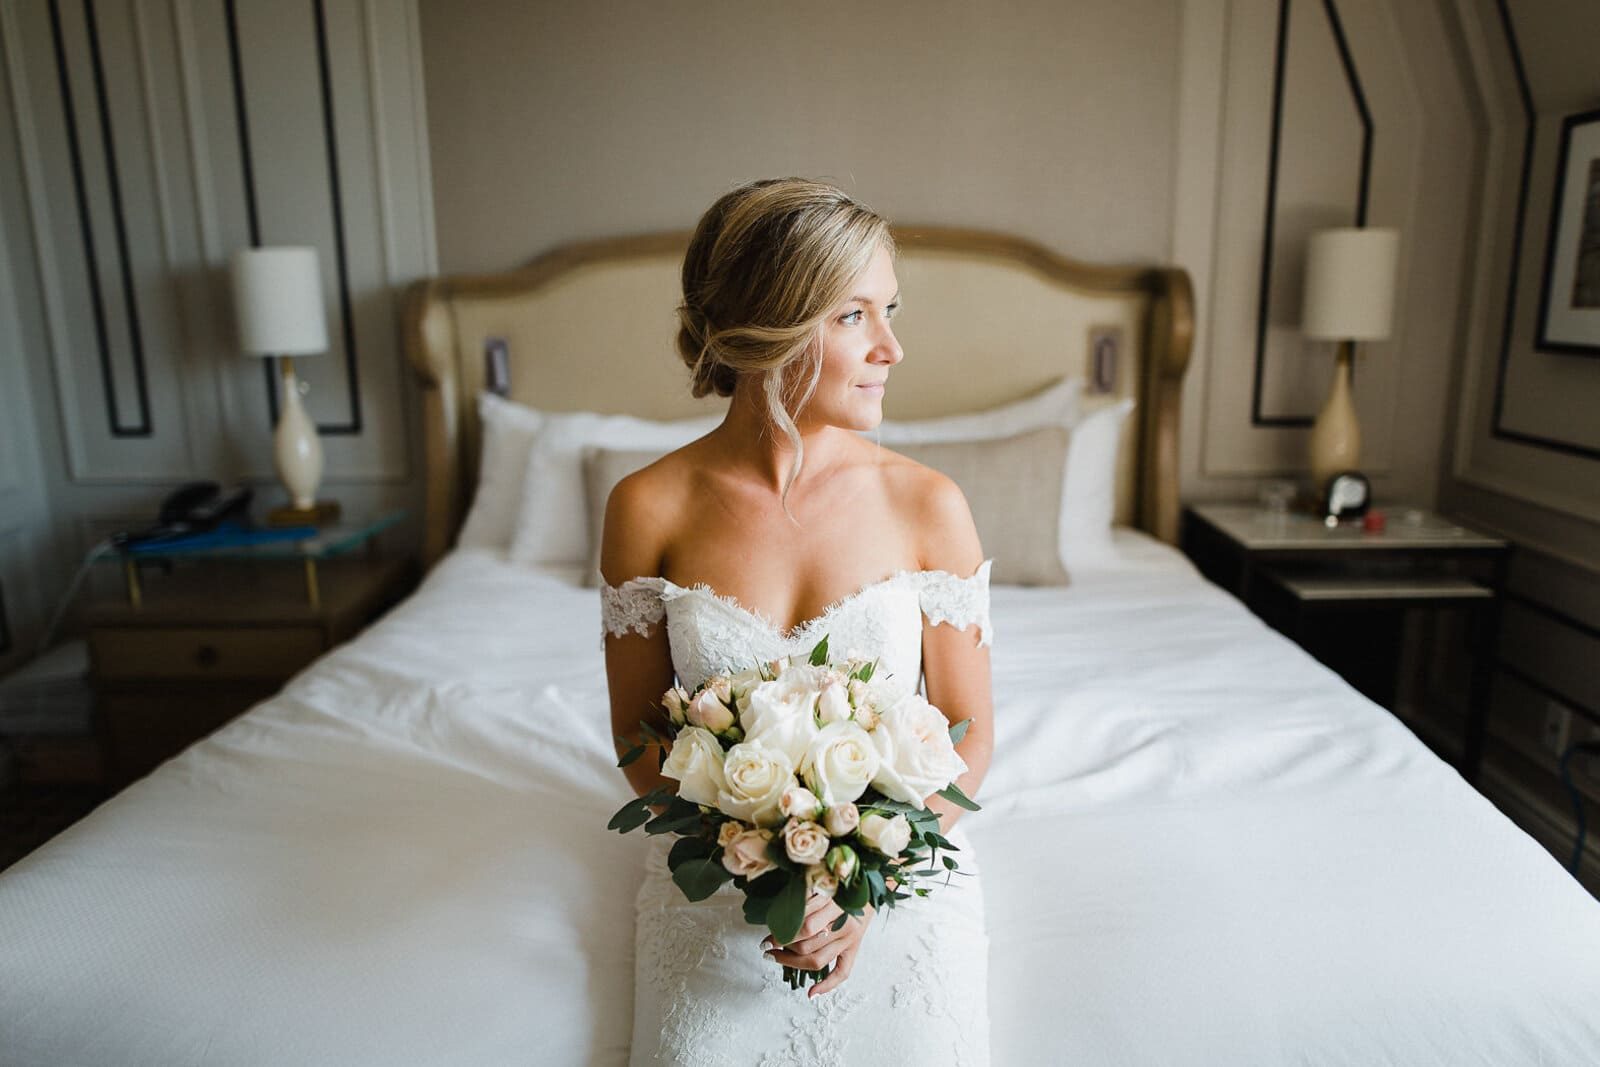 Une jeune mariée dans sa robe assise sur son lit fait de draps blancs et tenant dans ses mains un bouquet de fleurs roses pastels et blanches